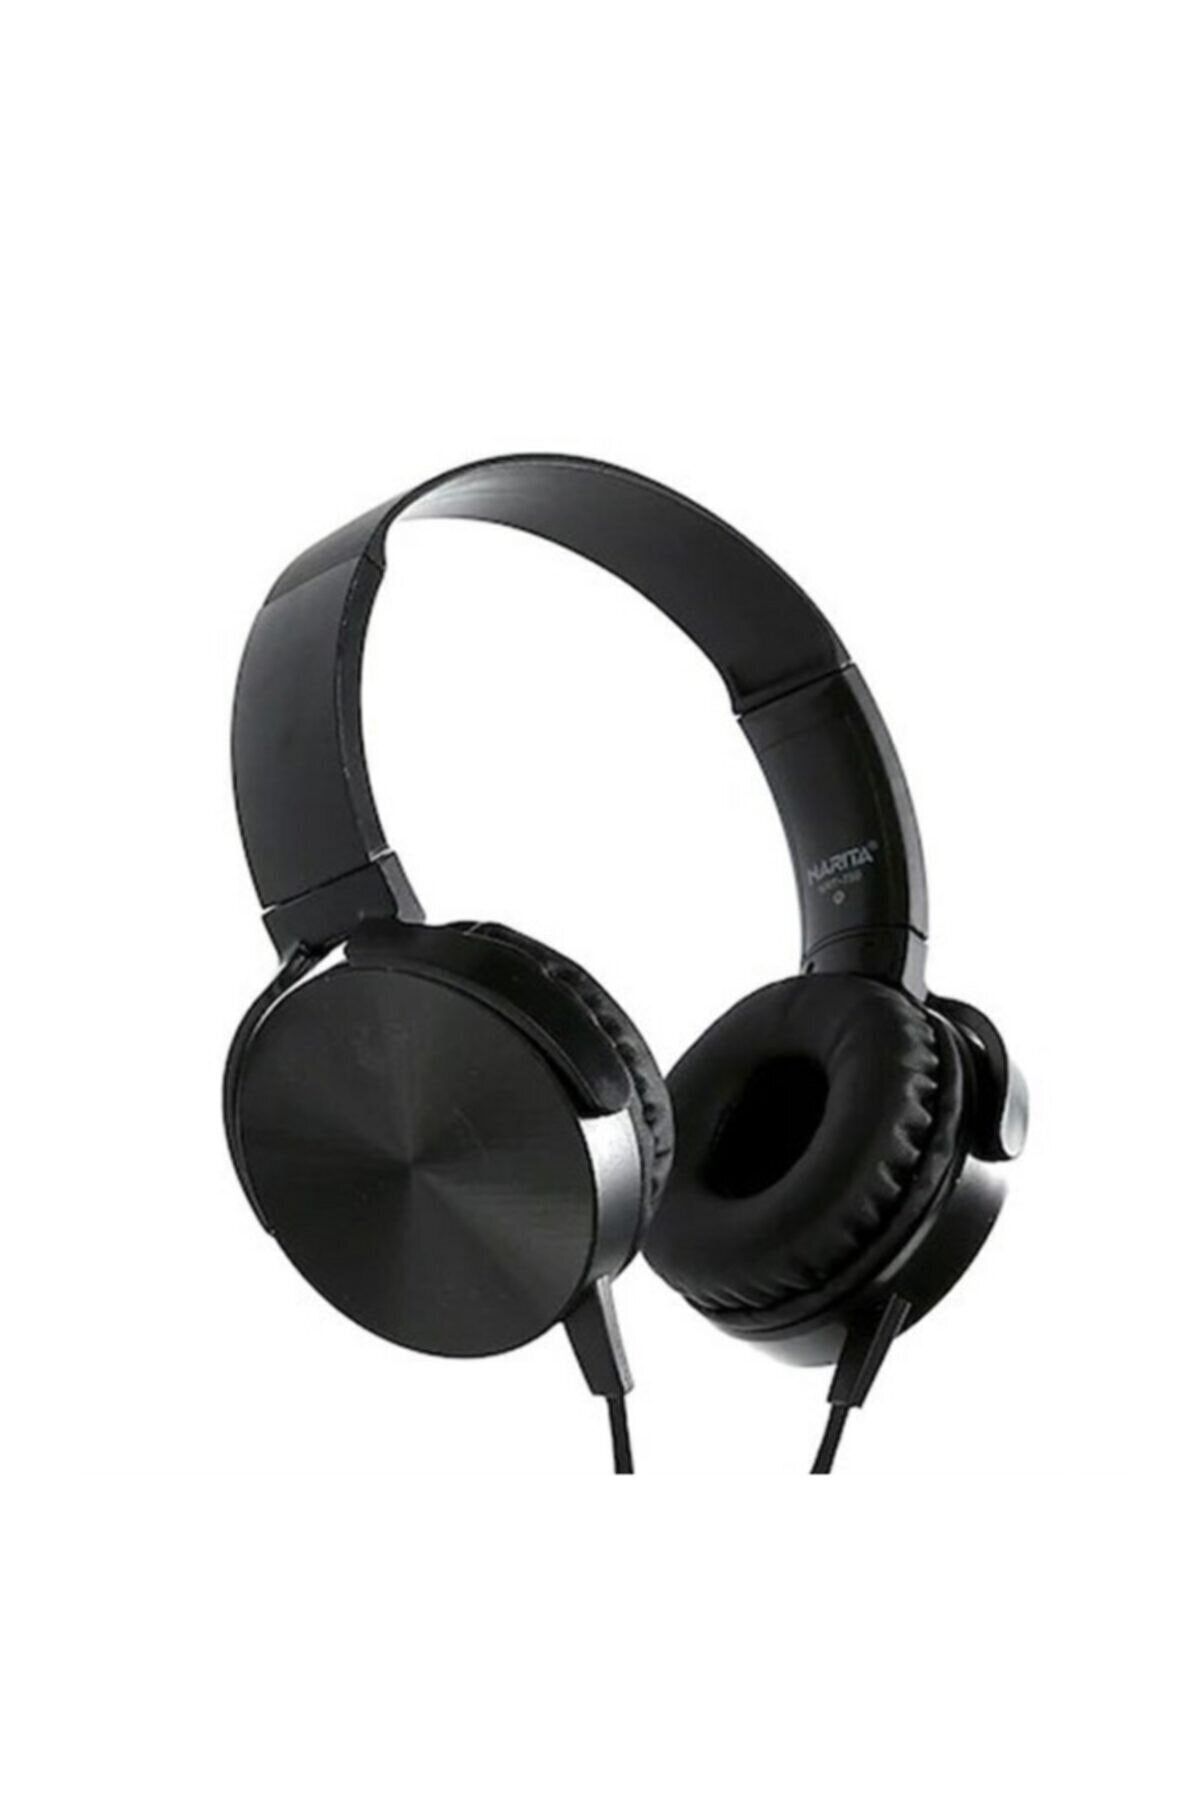 Genel Markalar Mdrxb450ap Mikrofonlu Katlanabilir Kulaküstü Kulaklık